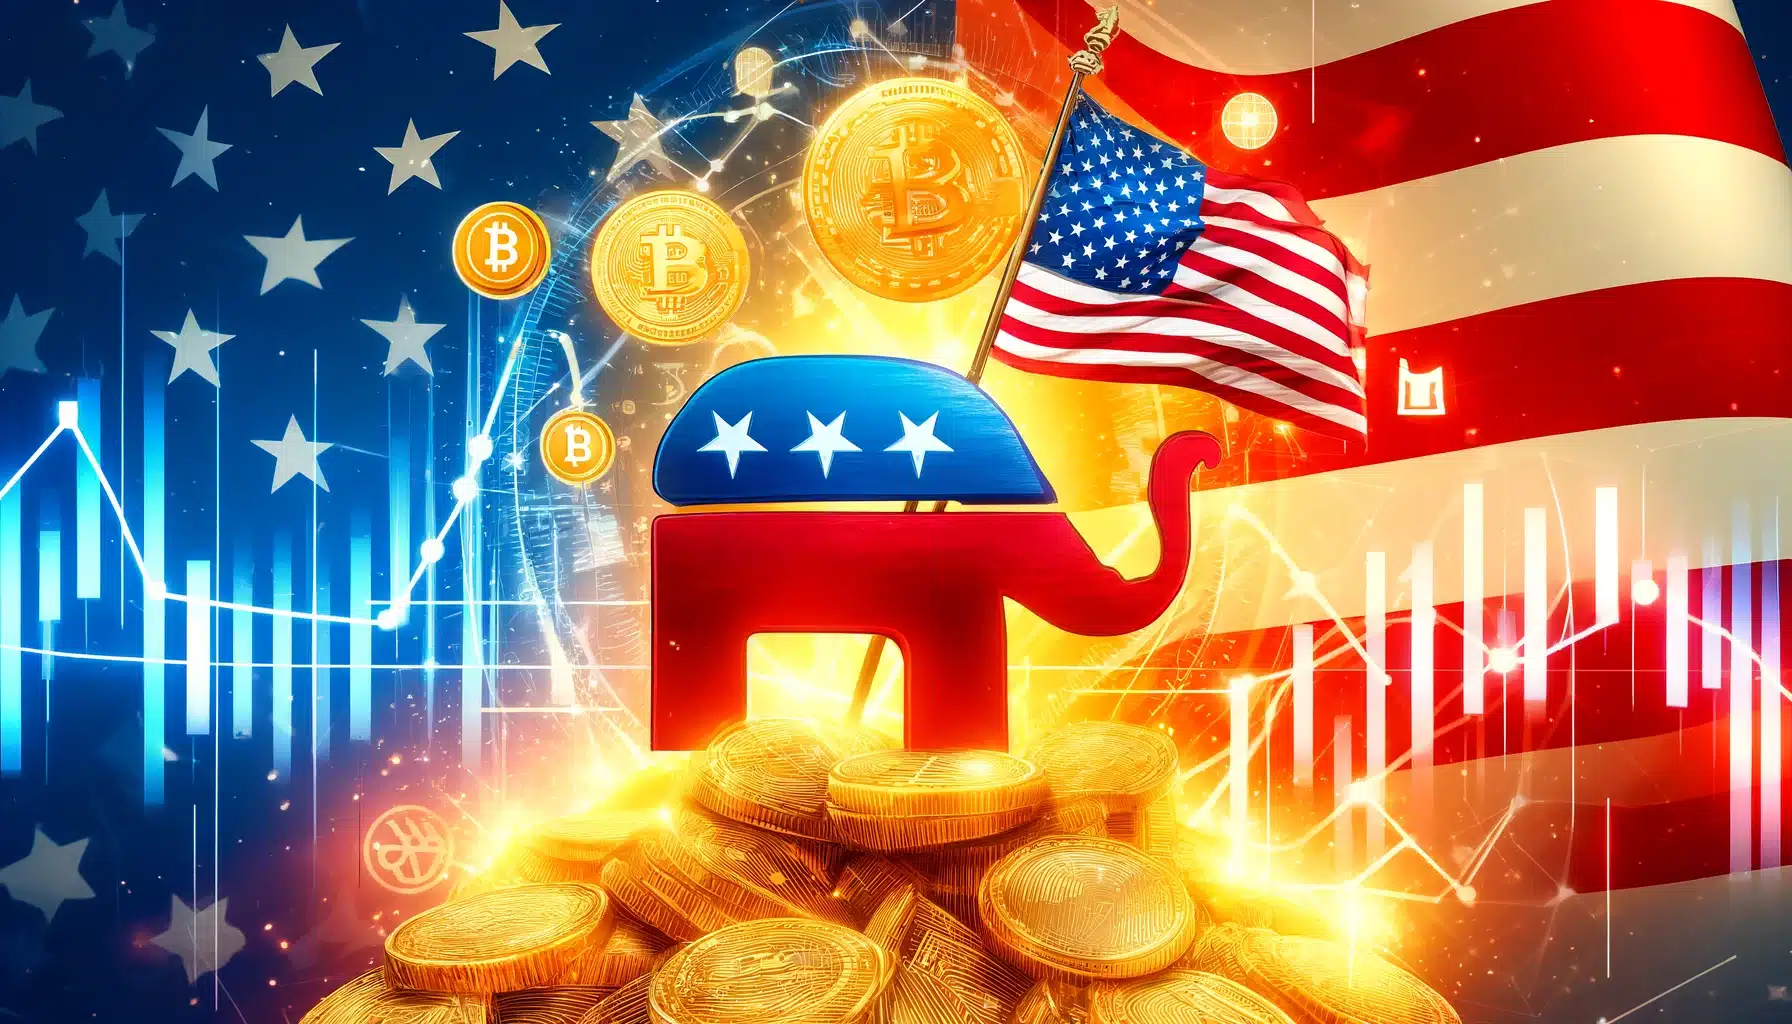 Bitcoin Trump Krypto Wahlkampf kaufen